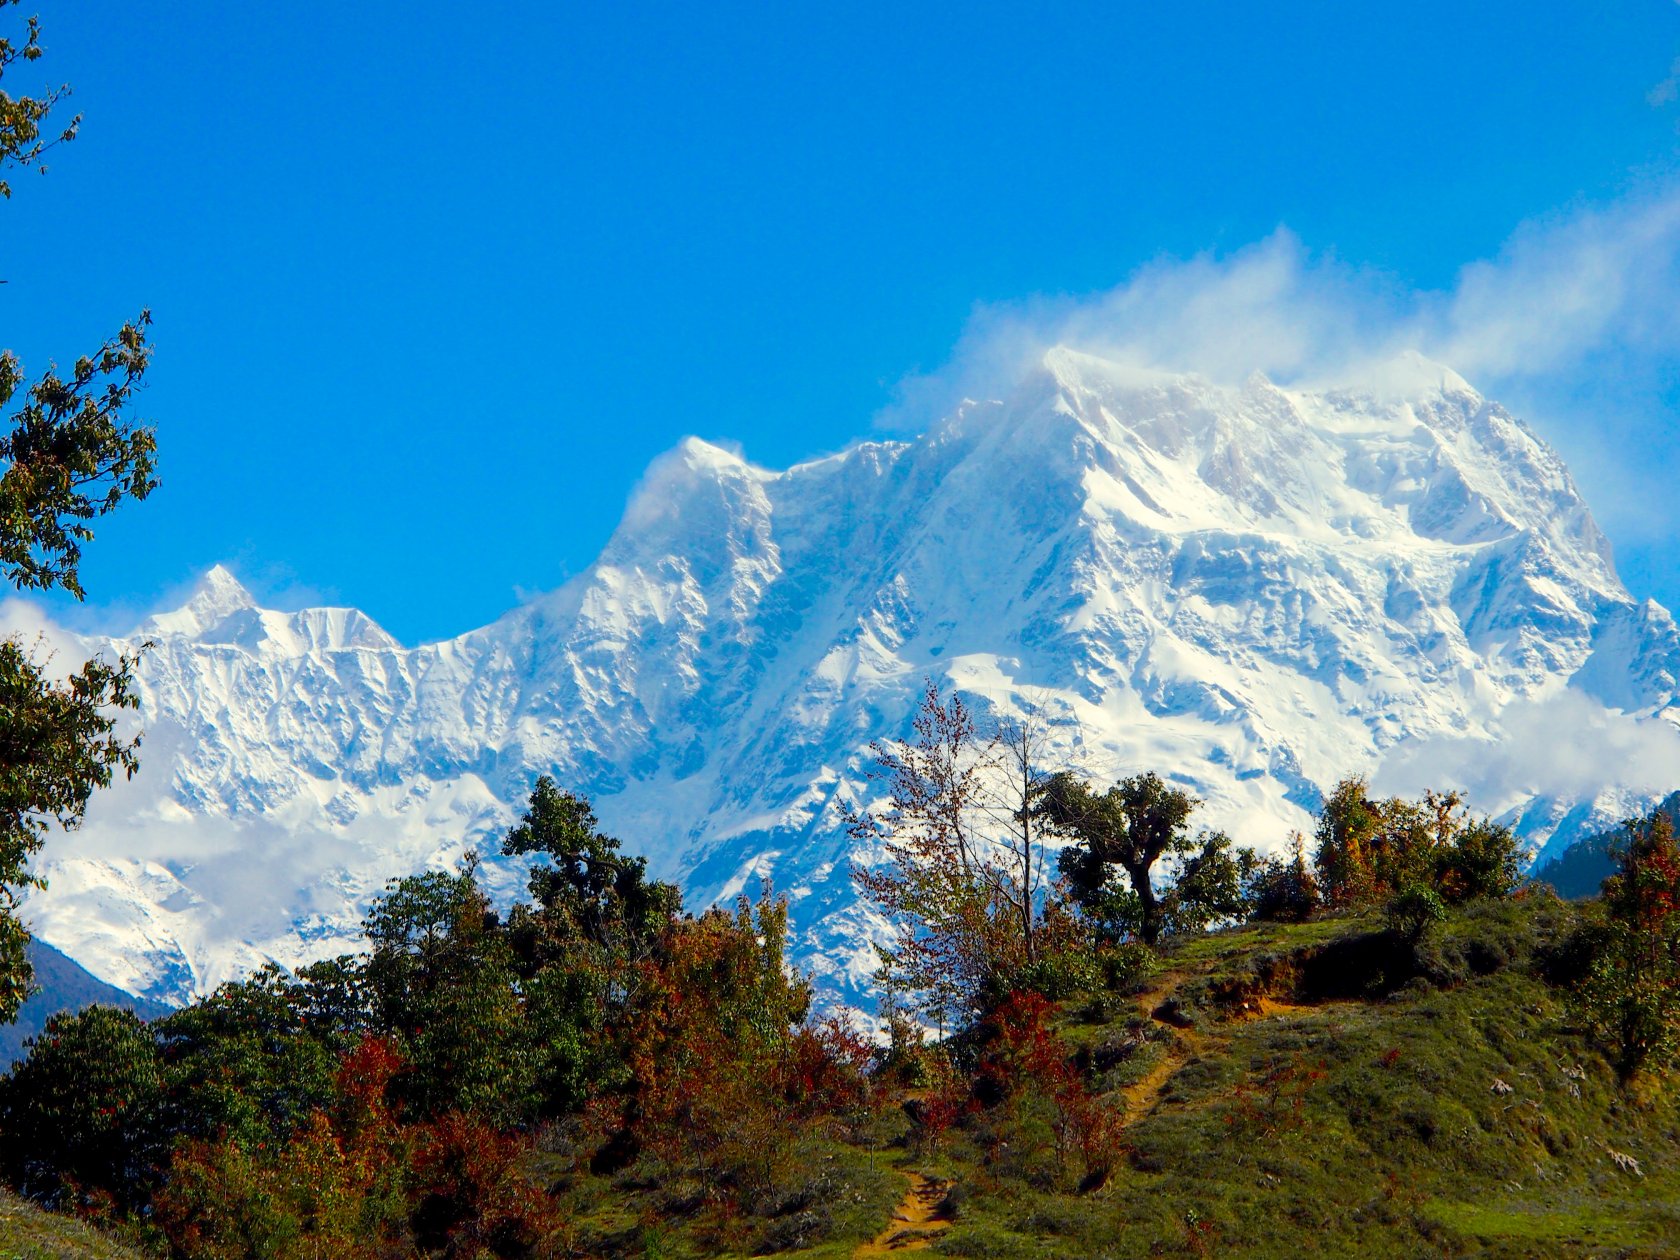 Г гималаи. Непал Гималаи. Индия горы Гималаи. Горный массив в Гималаях. Тибет Эверест Гималаи.